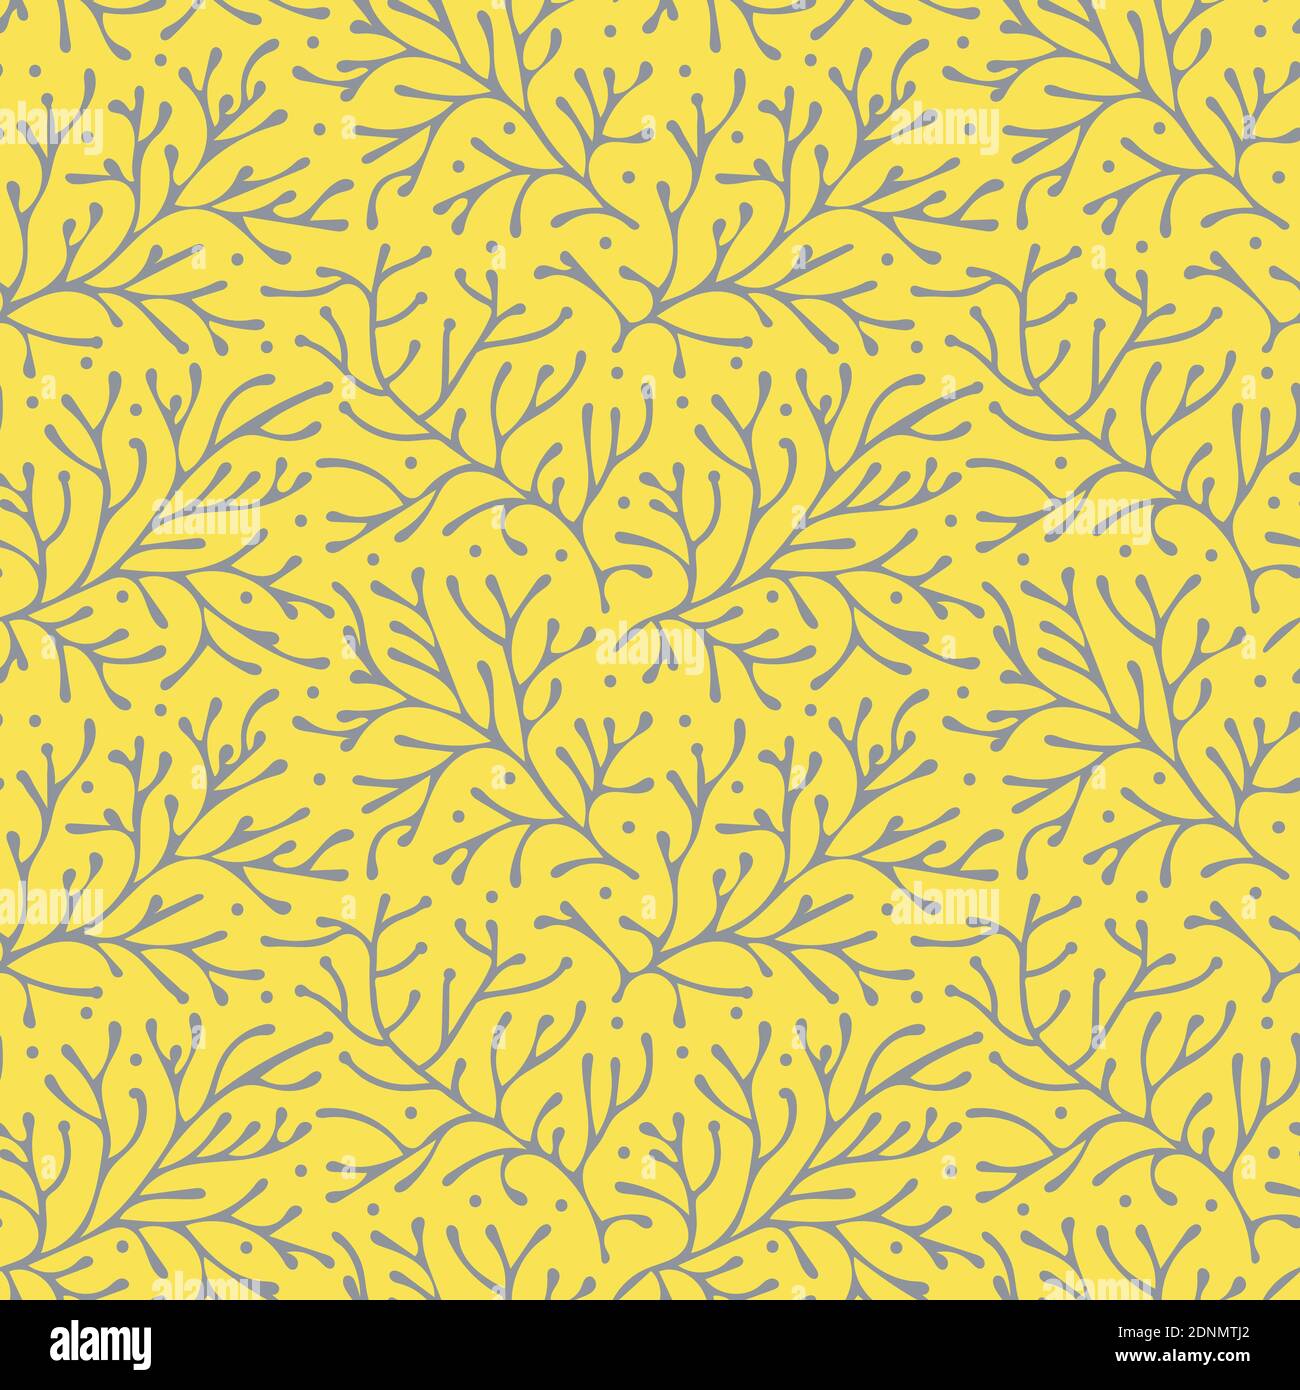 Abstrakt floral nahtlose Muster Vektor-Hintergrund, ultimative grau auf leuchtenden gelben pantone Farben des Jahres Stock Vektor